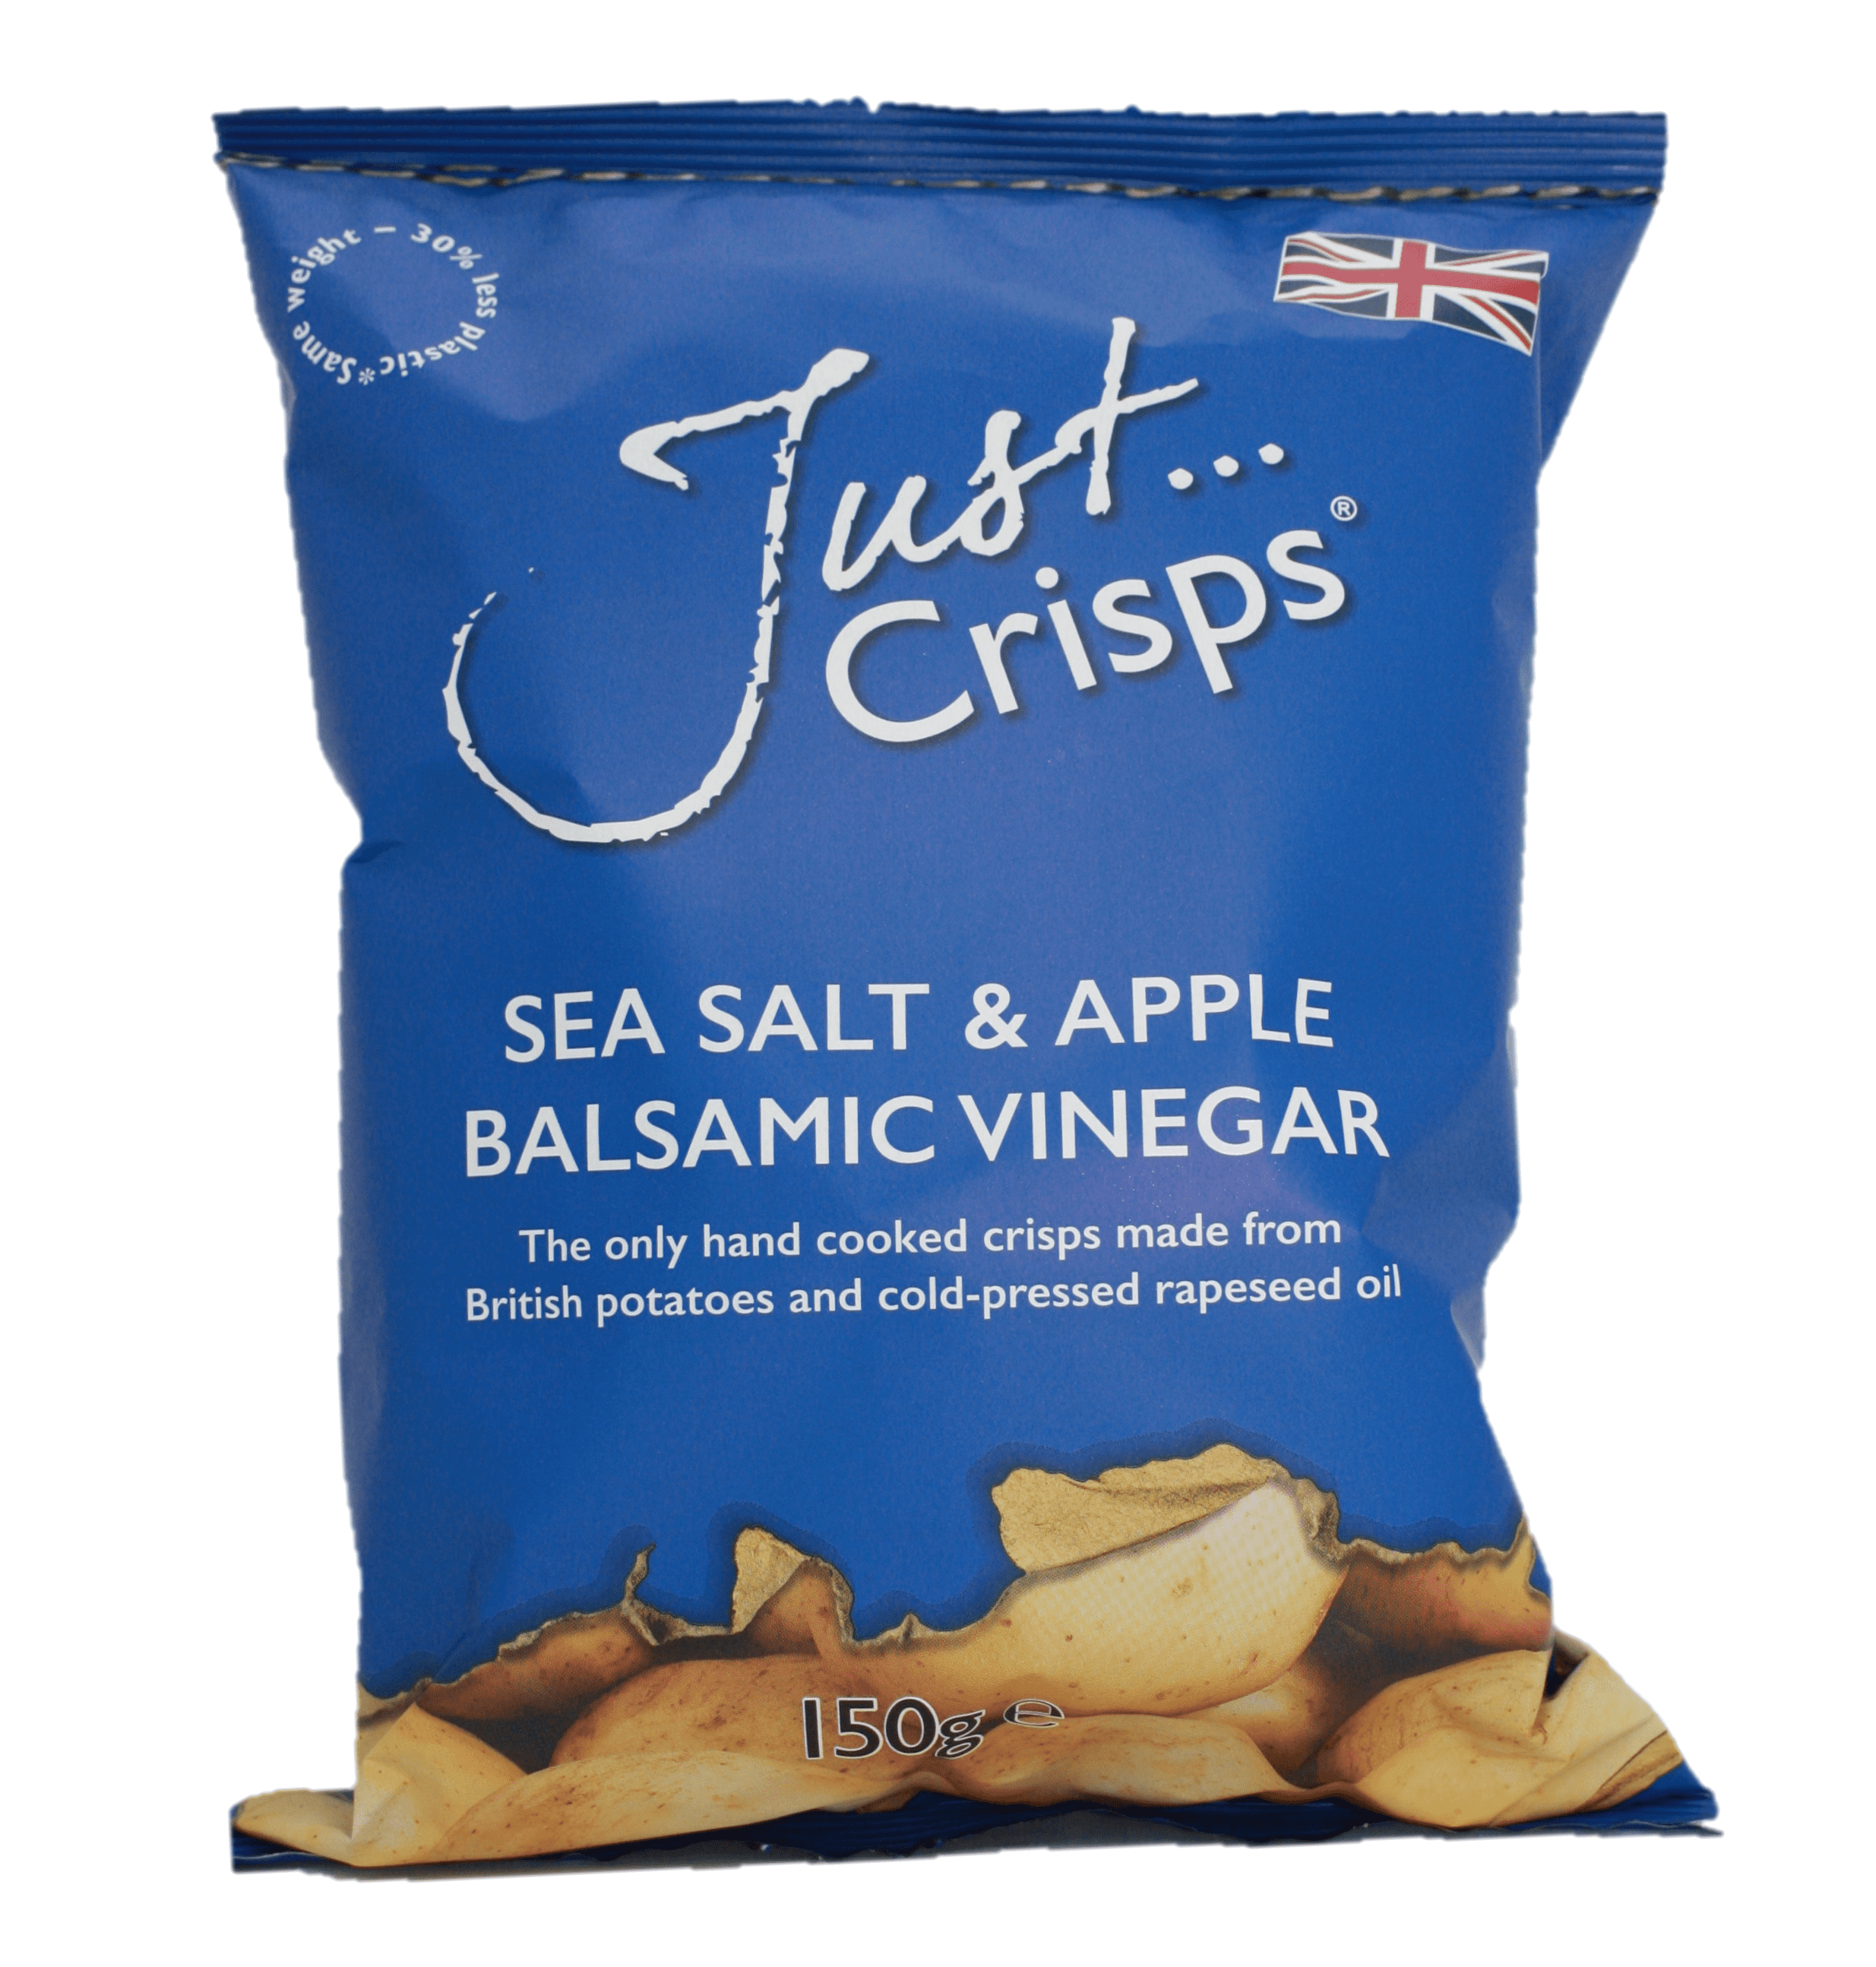 Just crisps- salt and vinegar